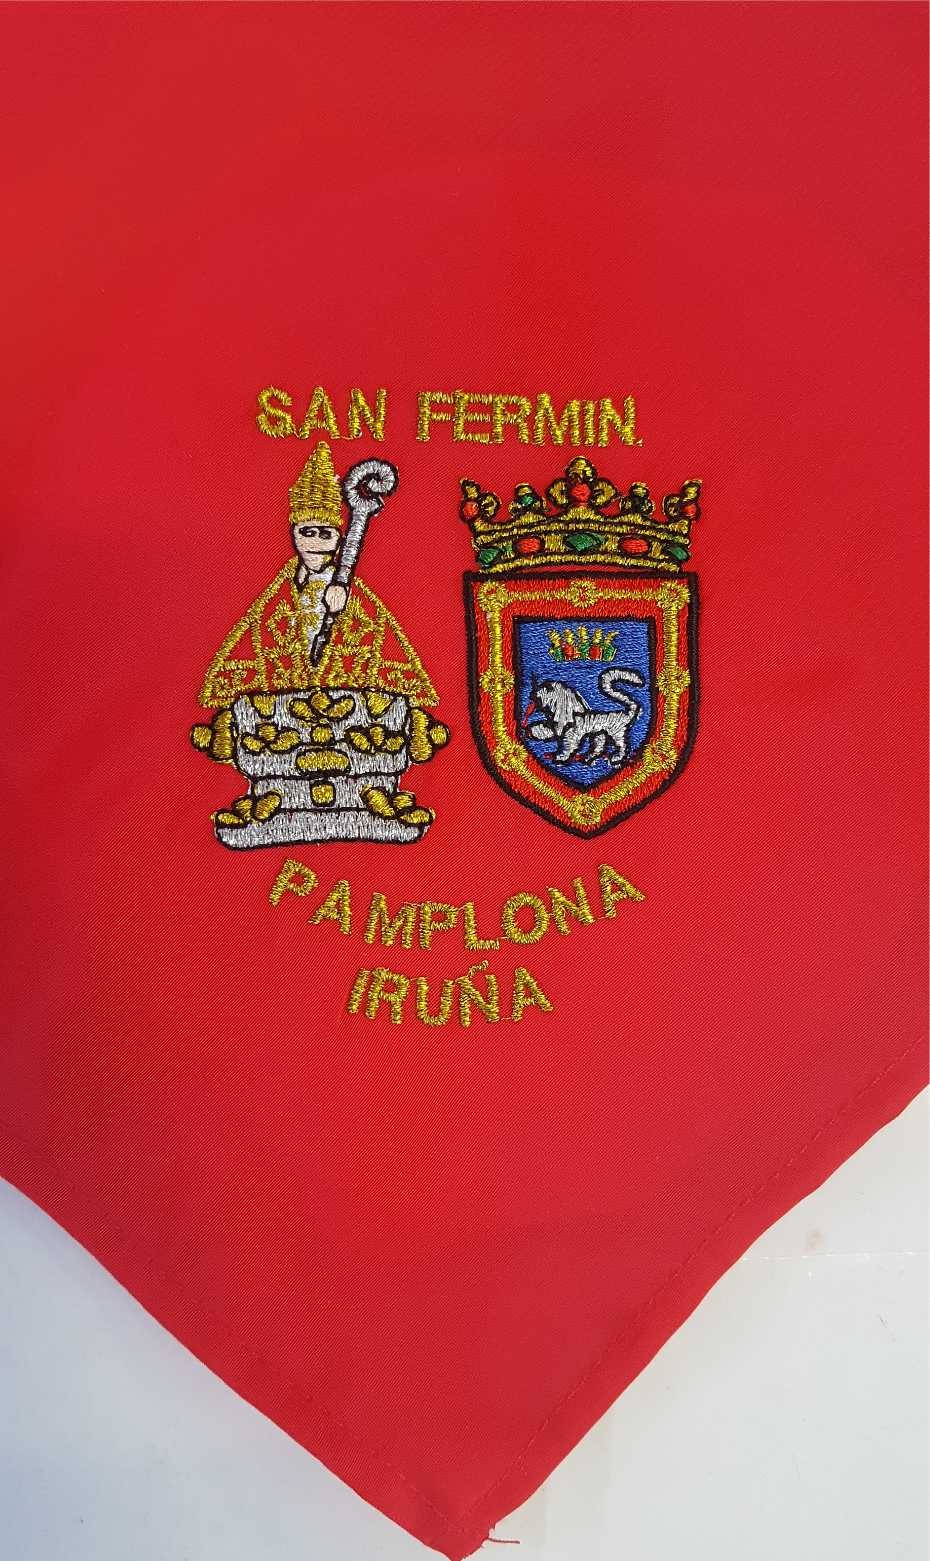 San Fermín/Iruña